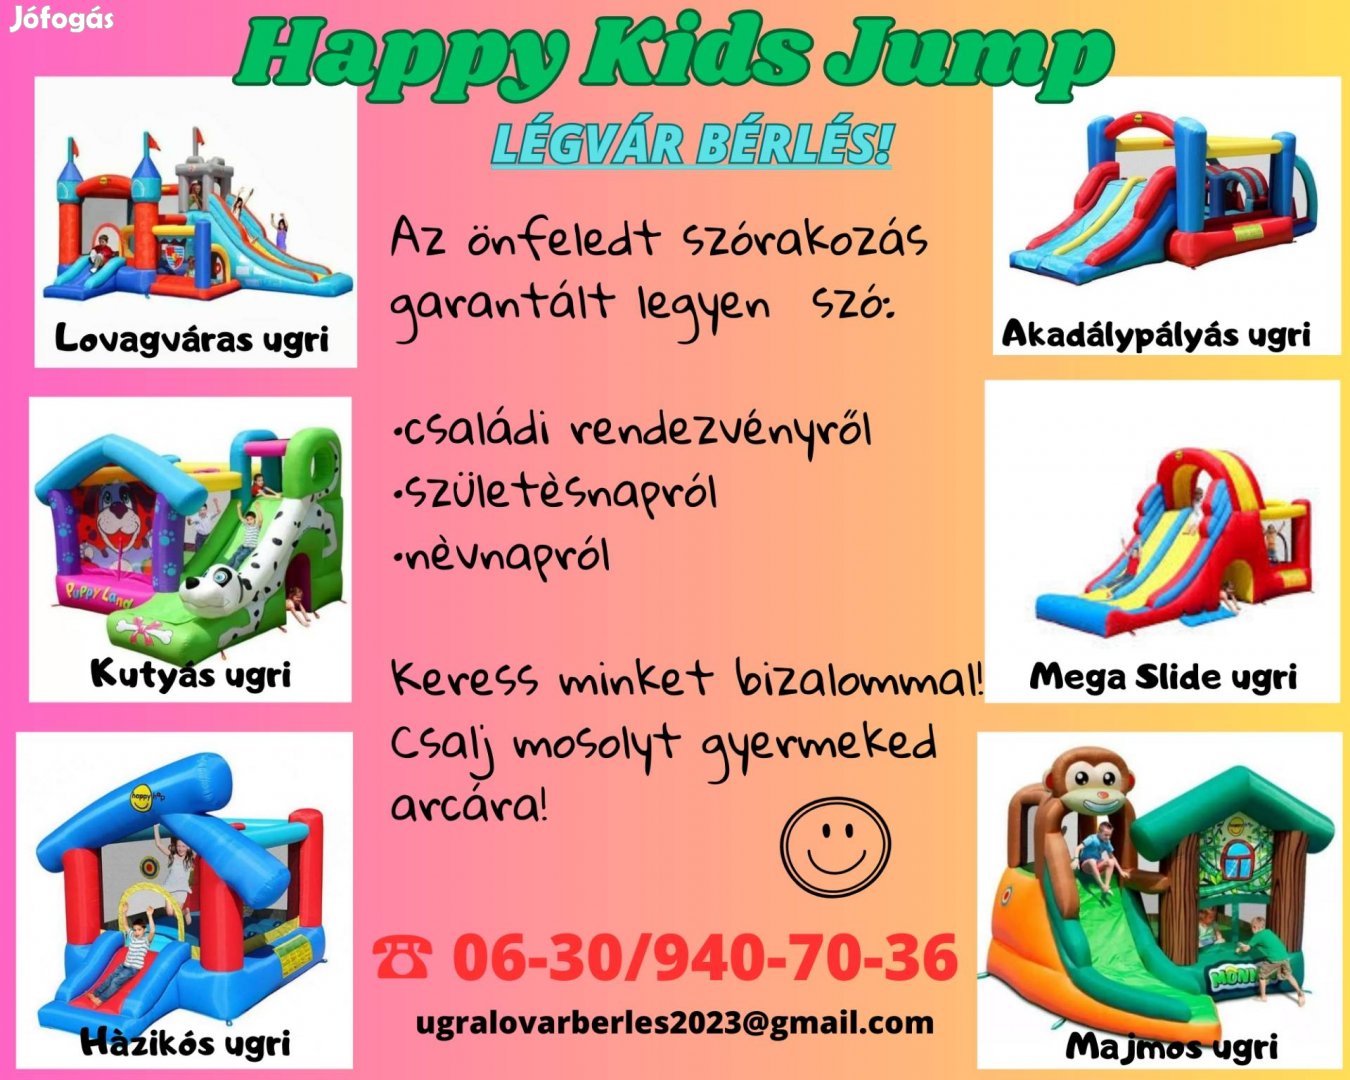 Ugrálóvár/Légvár bérlés a Happy Kids Jump-tól